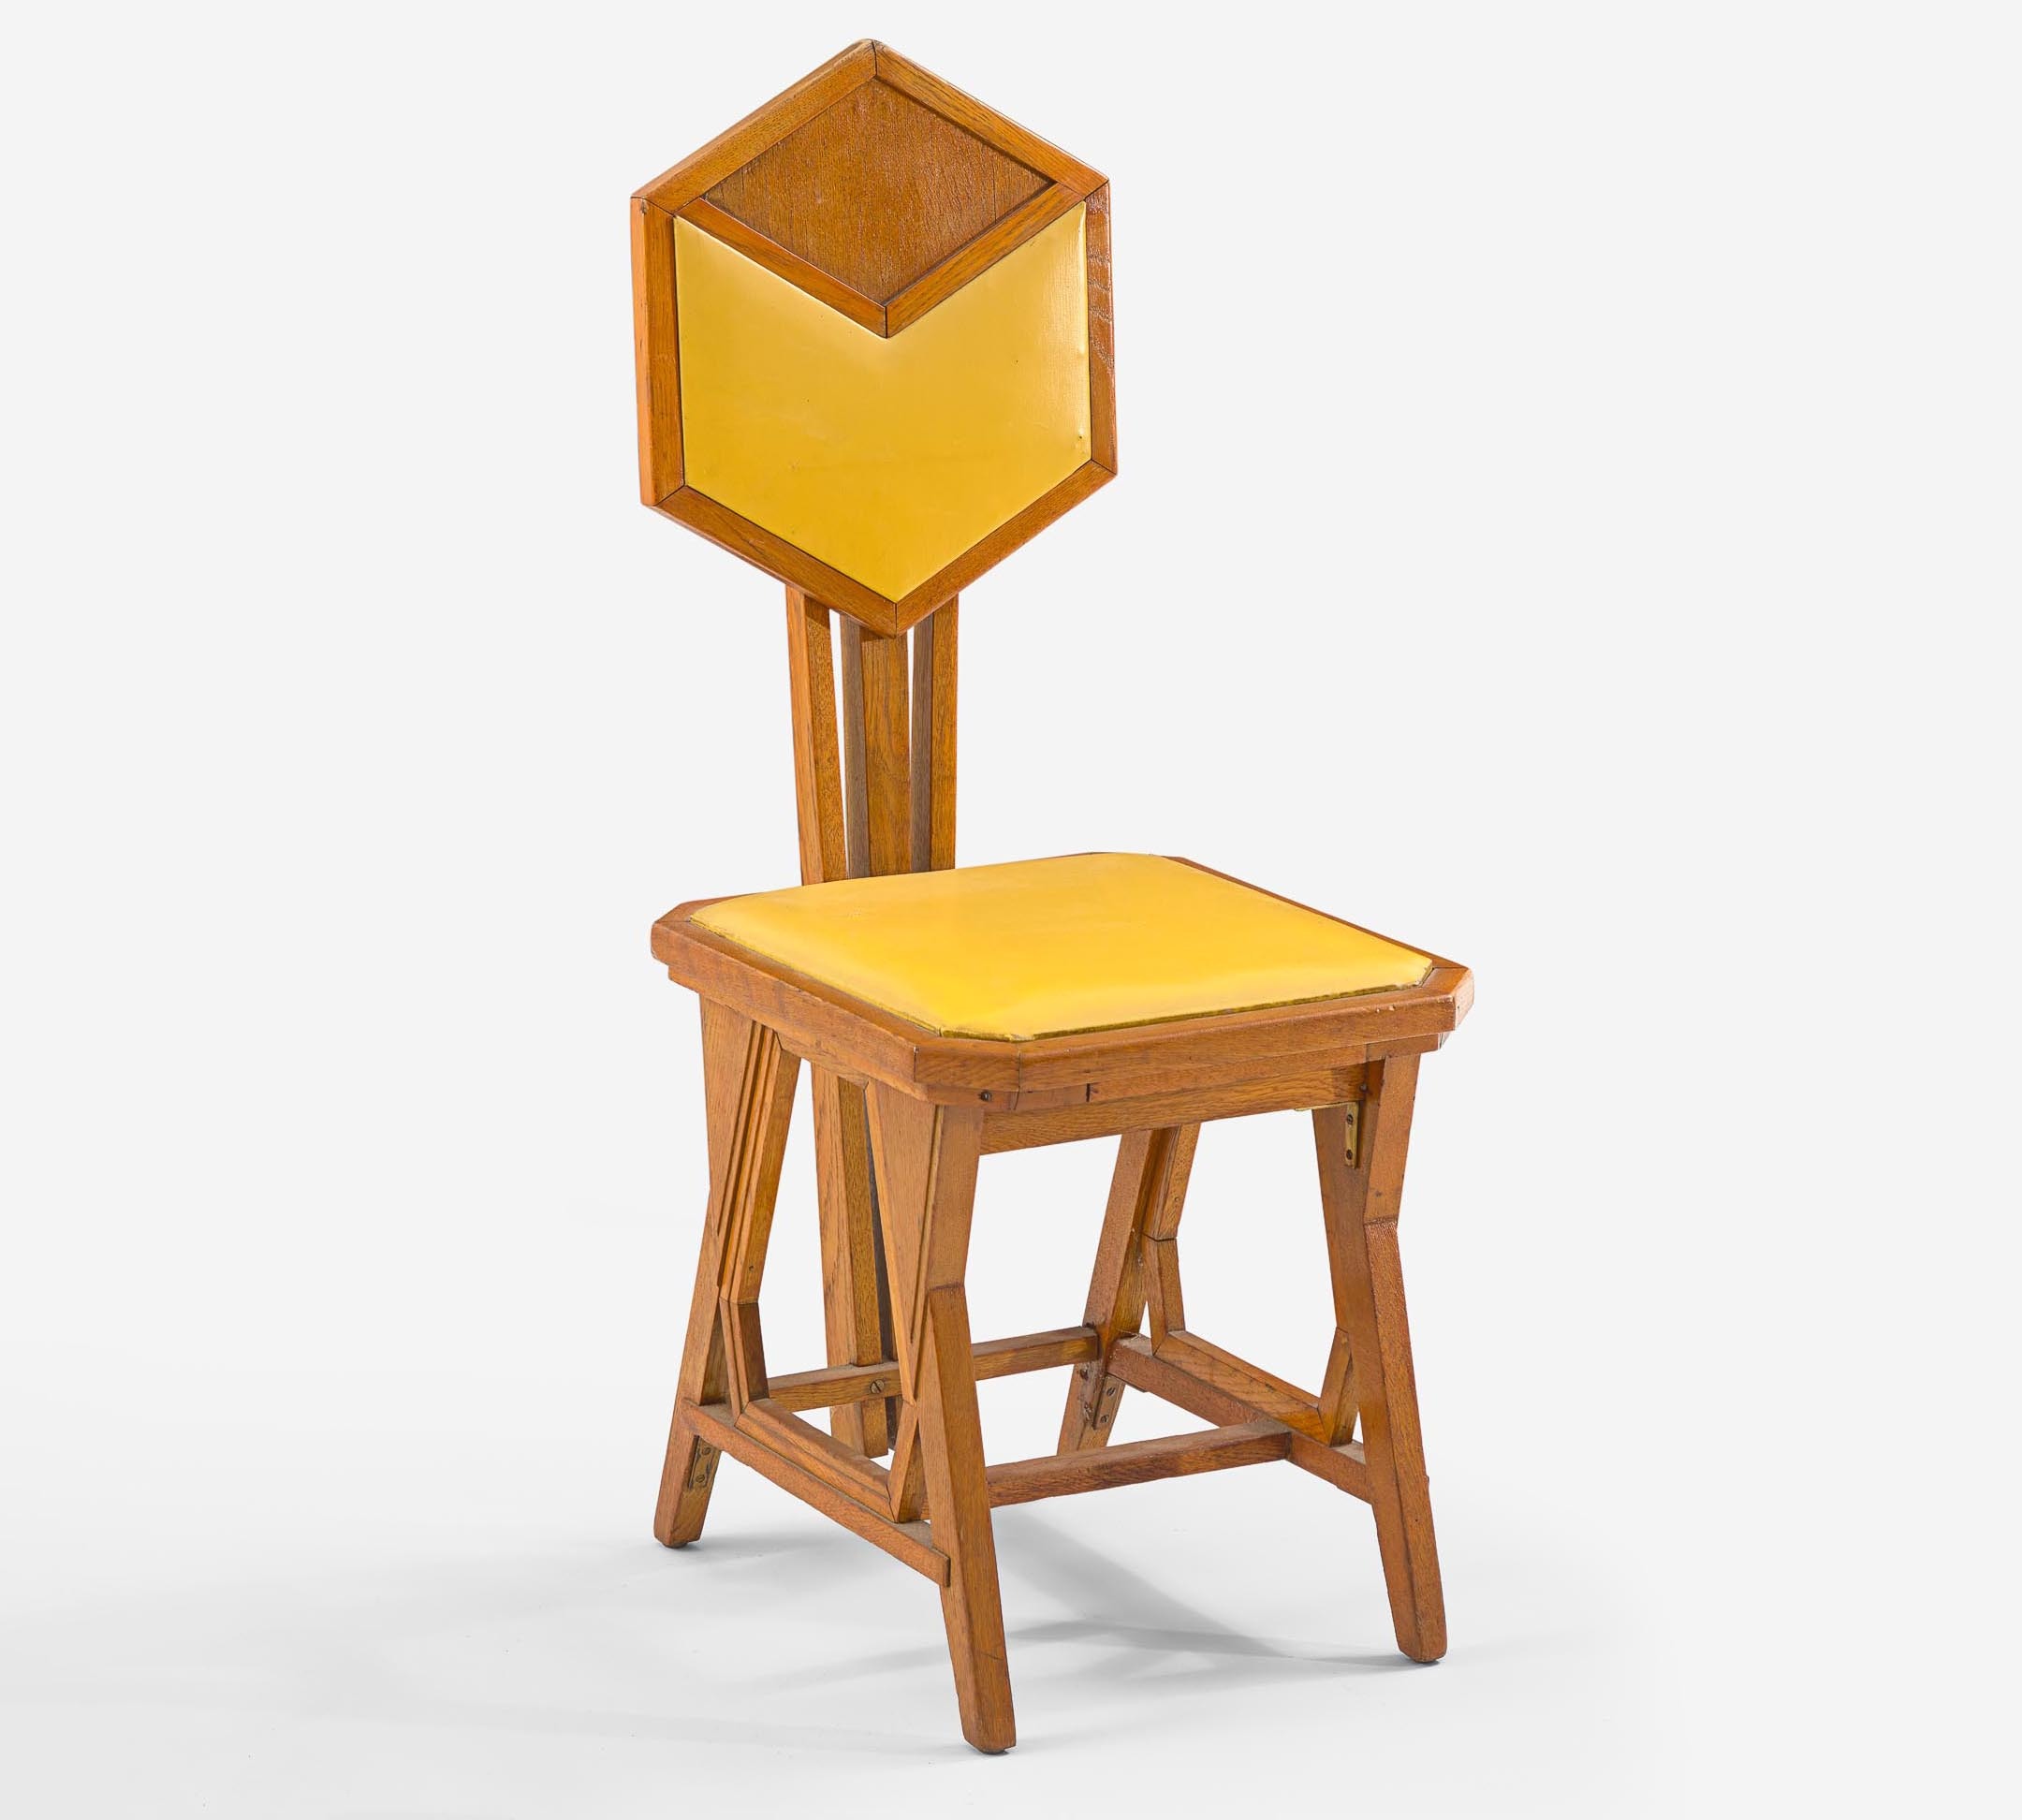 Frank Lloyd Wright Chair